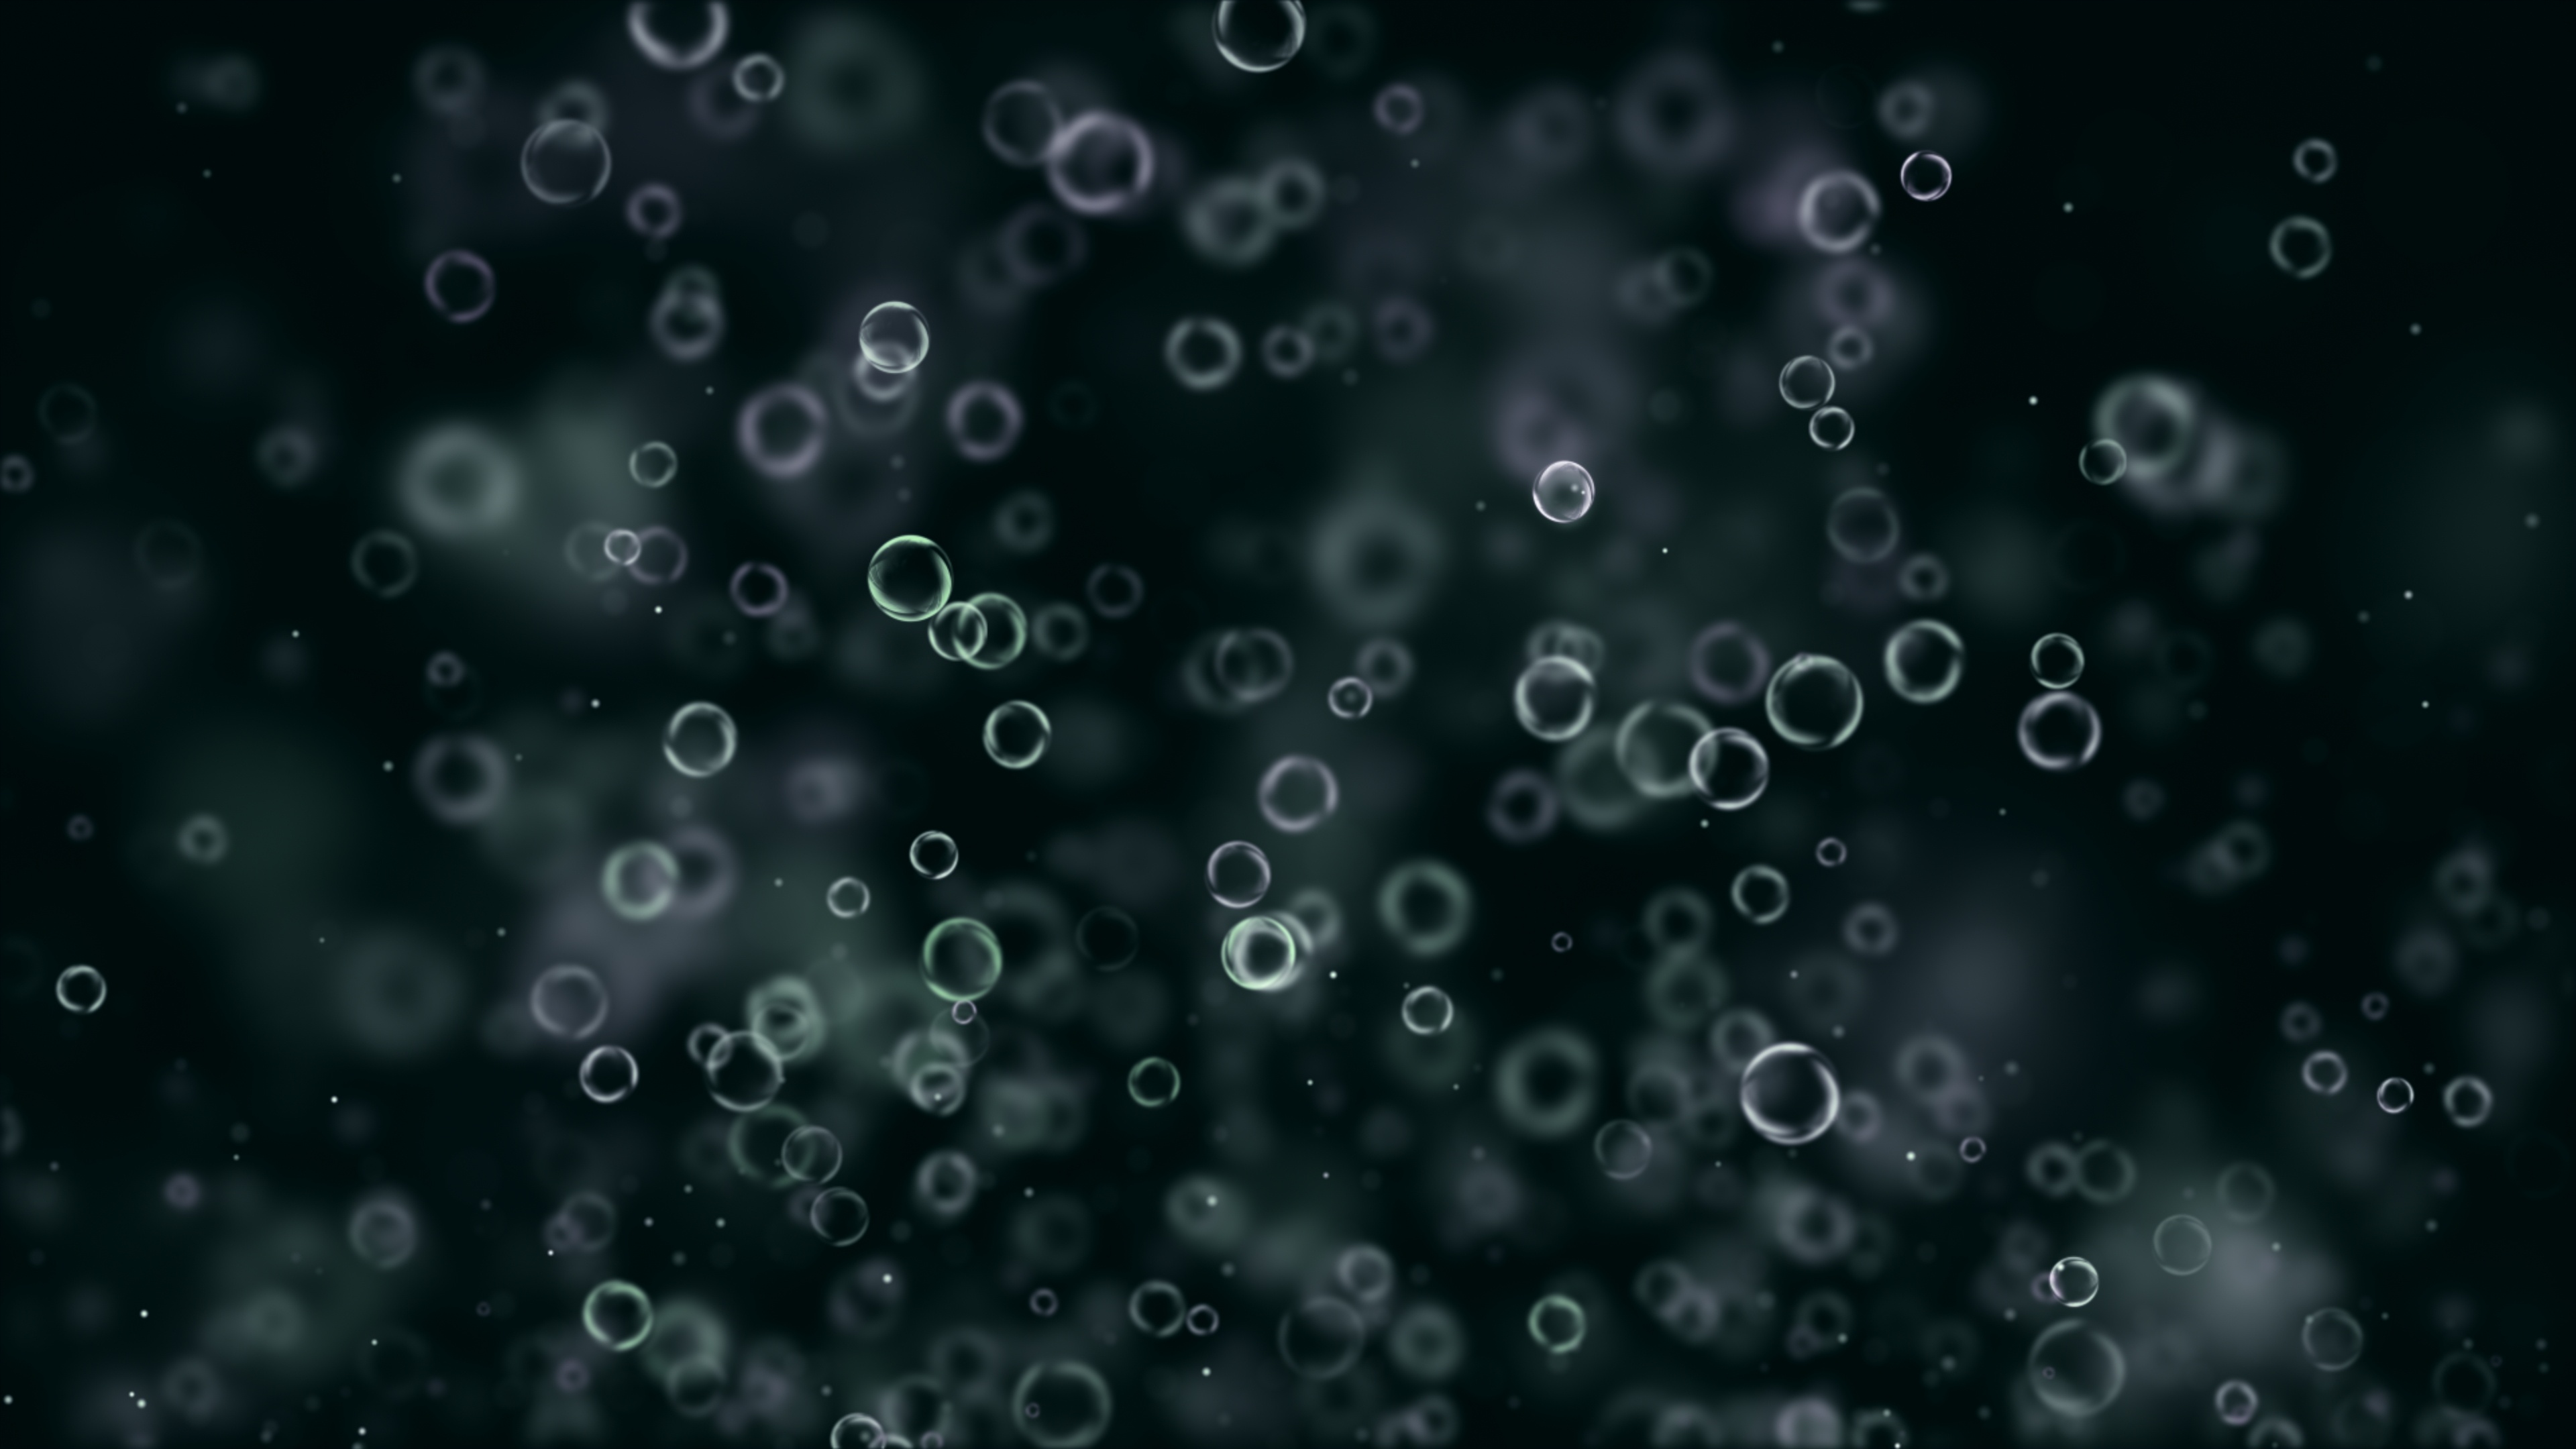 4K bubble wallpapers, Bubble backgrounds, Bubble art, Abstract bubbles, Bubble burst, 3840x2160 4K Desktop